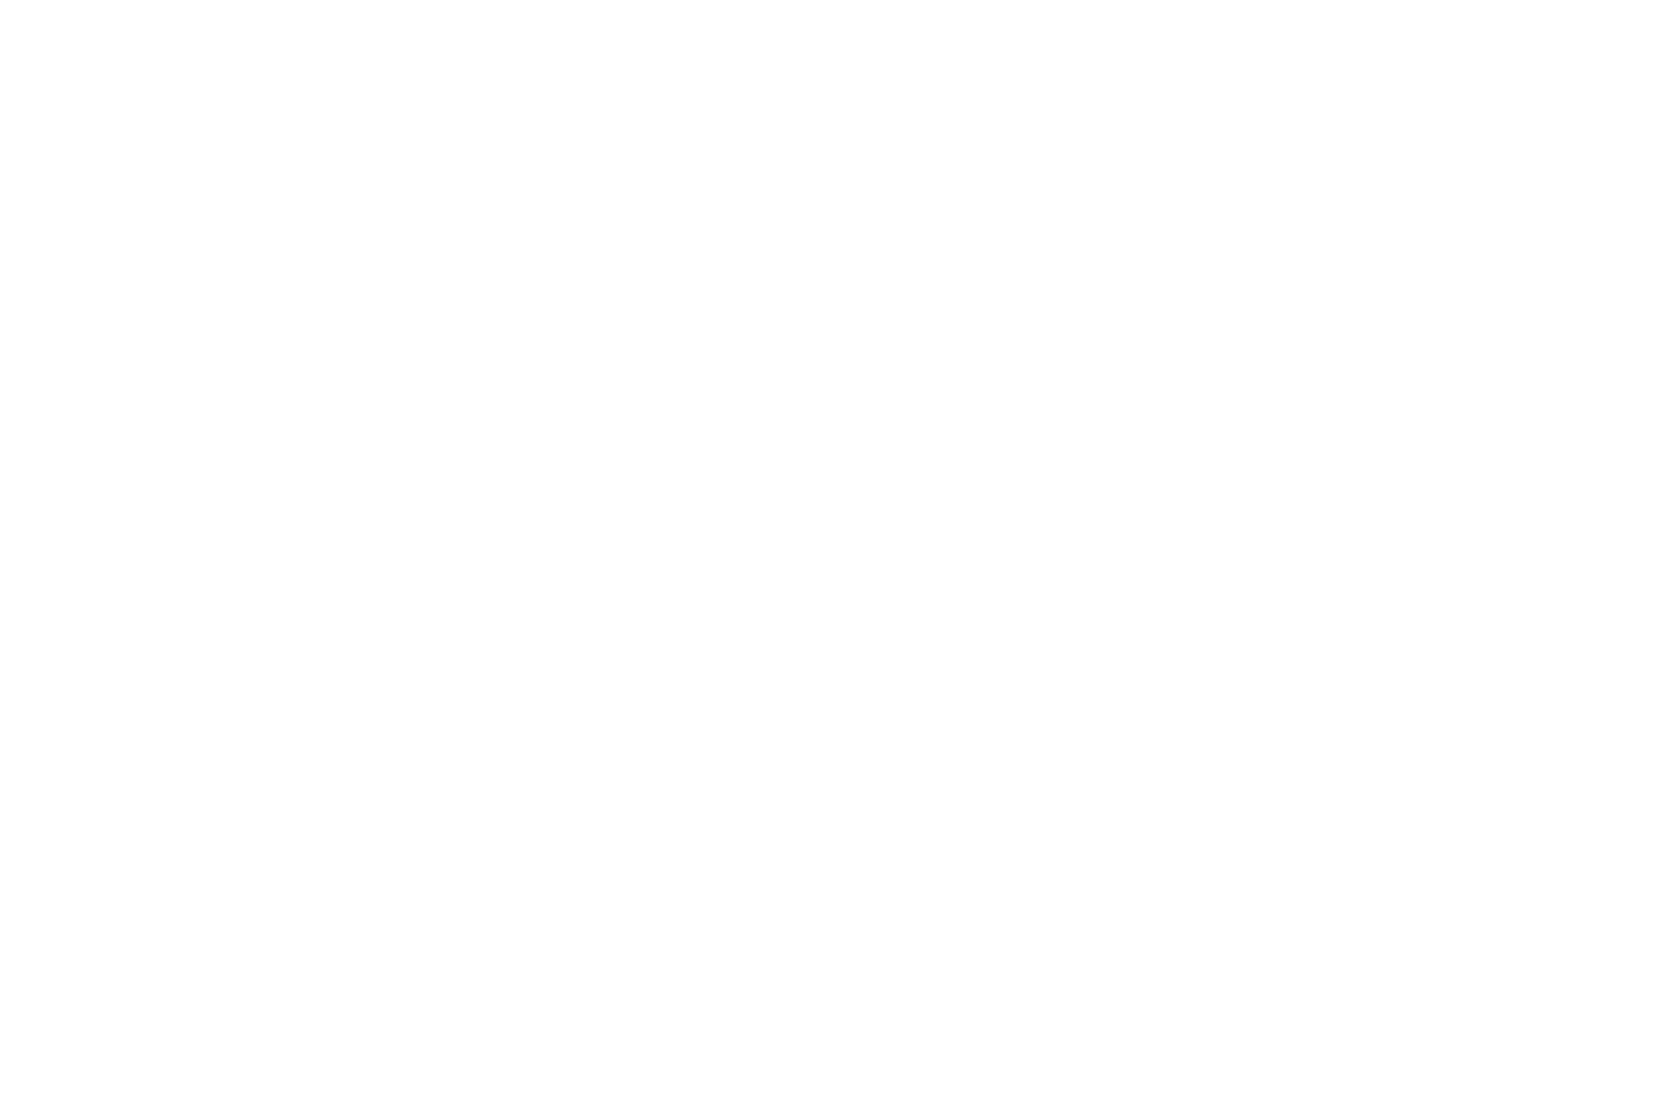 Муштарийбону Иброхимжонова (Узбекистан) и Луиза Коваленко (Россия) во время поединка по боксу. Фото Павла Орловского